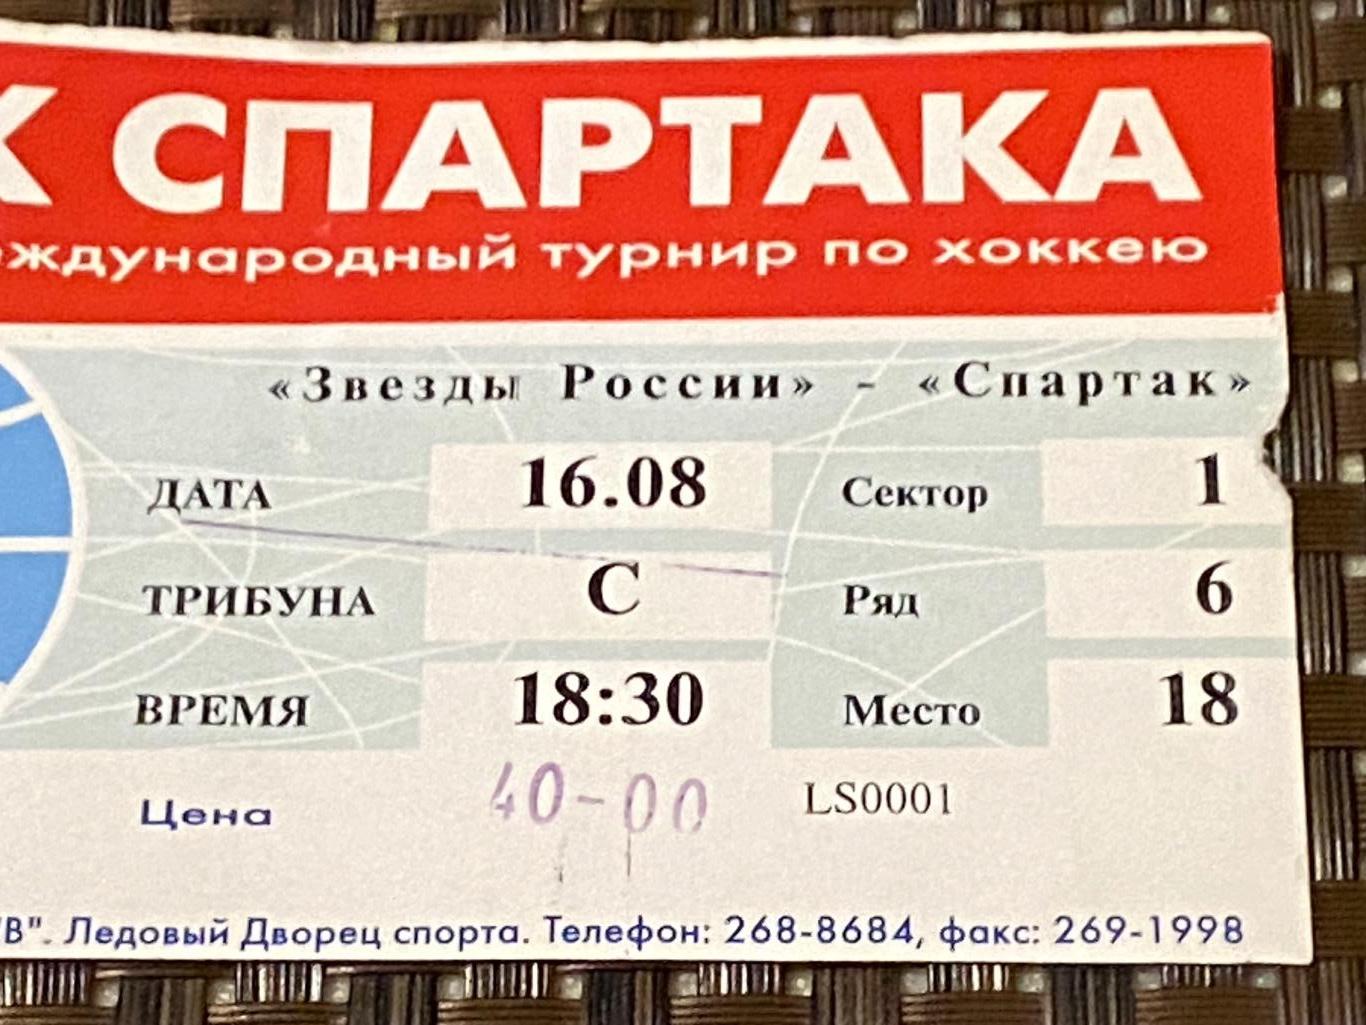 Спартак Москва - Звезды России 16.08.1999 Кубок Спартака - SY 1